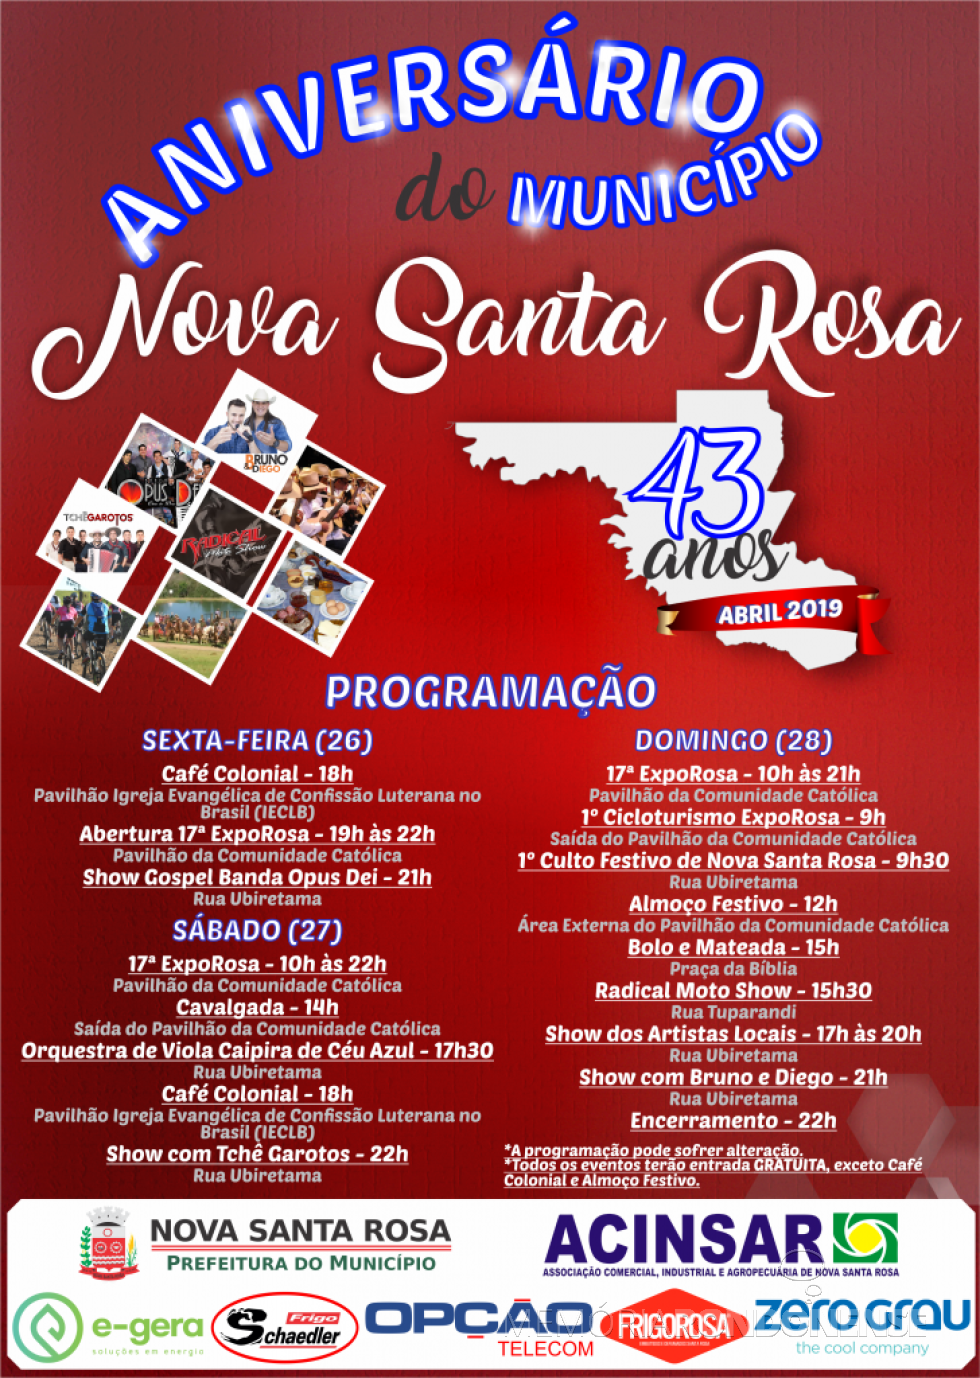 || Cartaz alusivo aos festejos dos 43 anos do município de Nova Santa Rosa com a agenda programática dos eventos comemorativos, em abril de 2019.
Imagem: Acervo Memória Rondonense - FOTO  22 - 